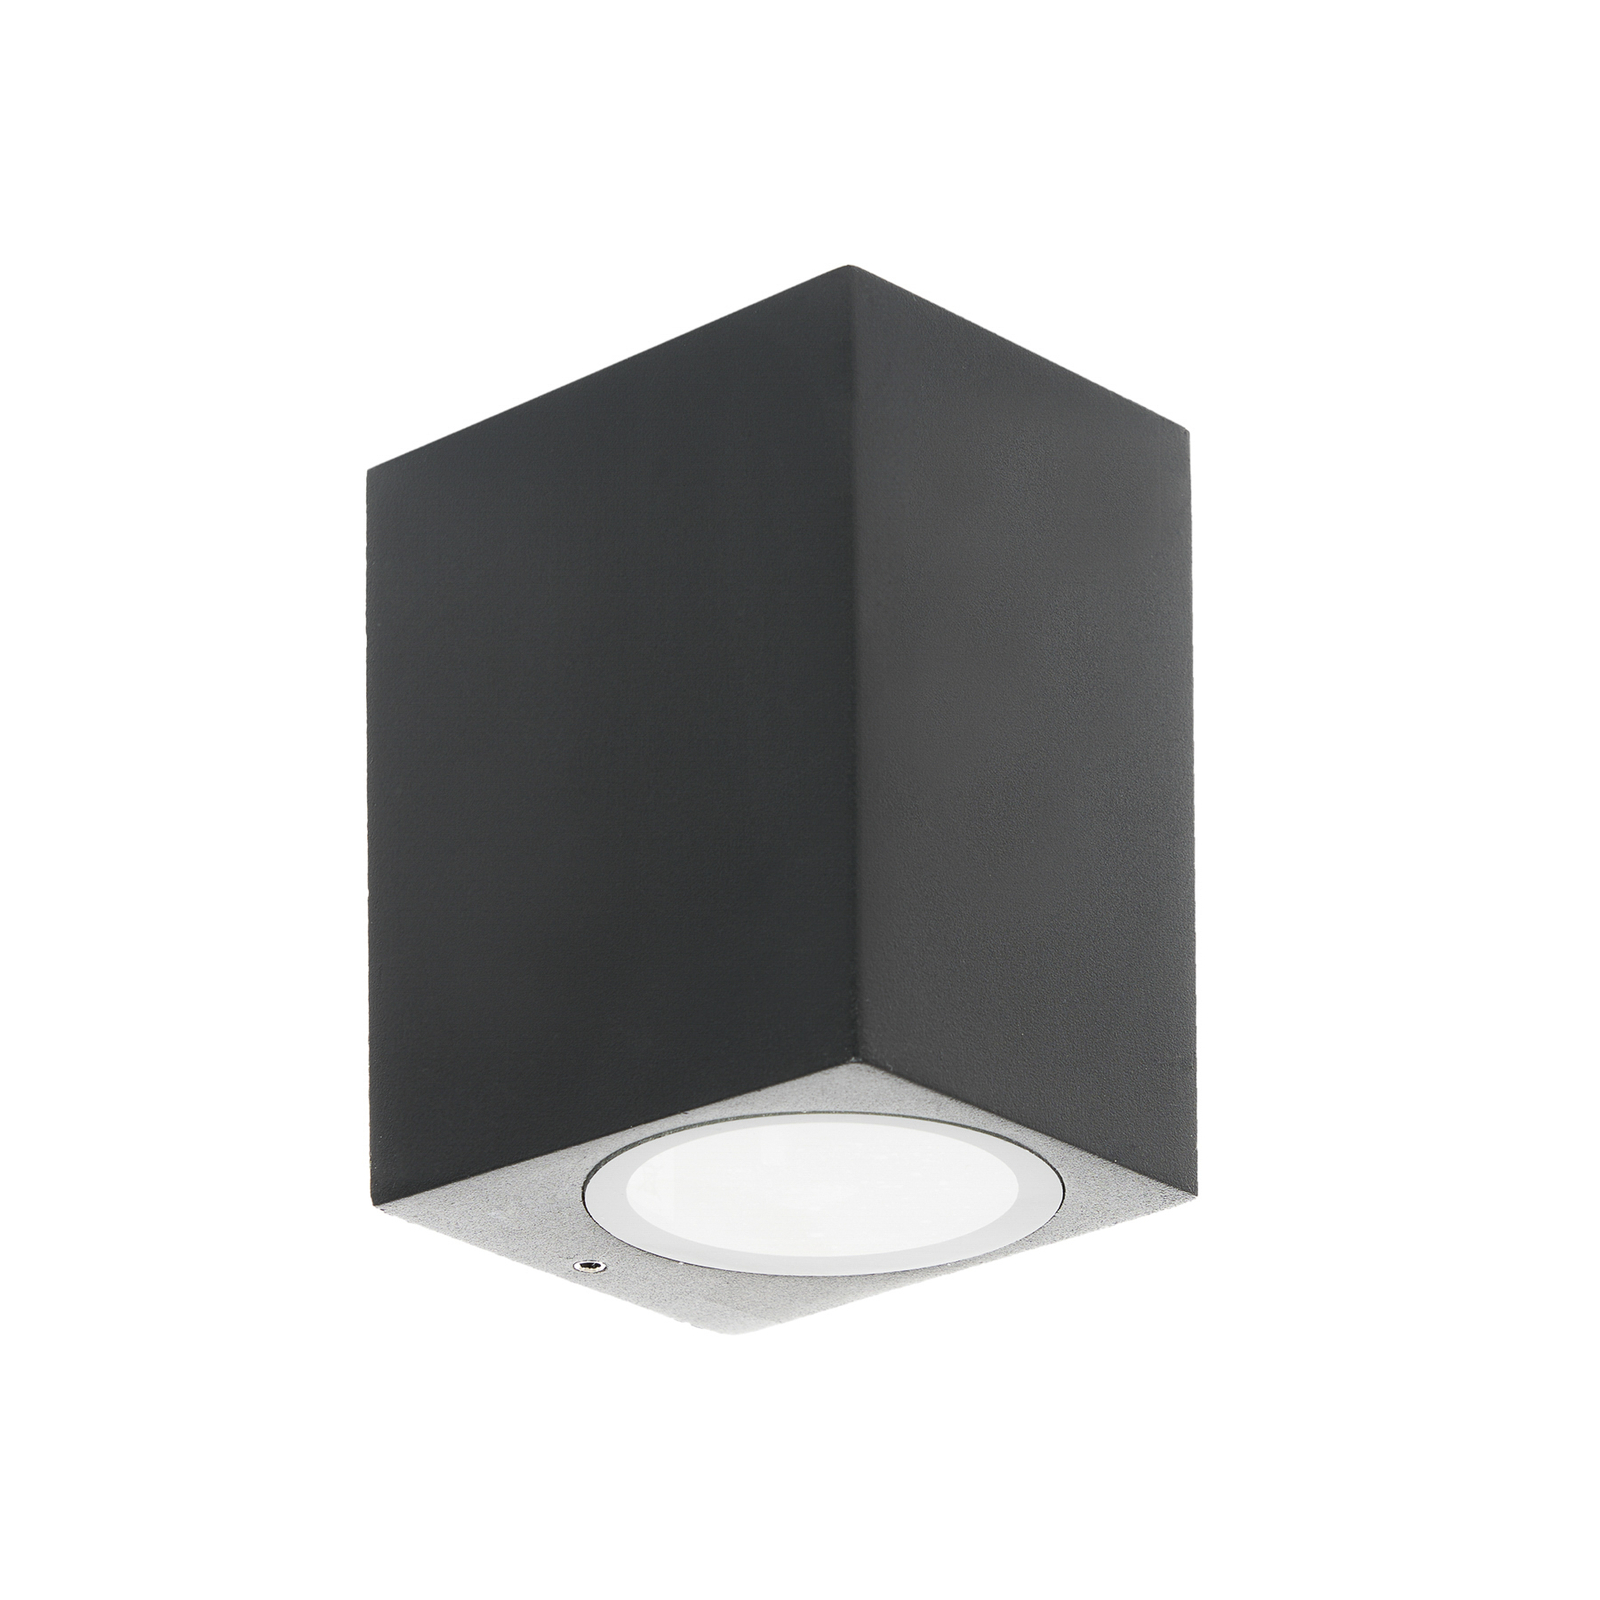 Prios kültéri fali lámpa Tetje, fekete, szögletes, 10 cm, 4 darabos szett